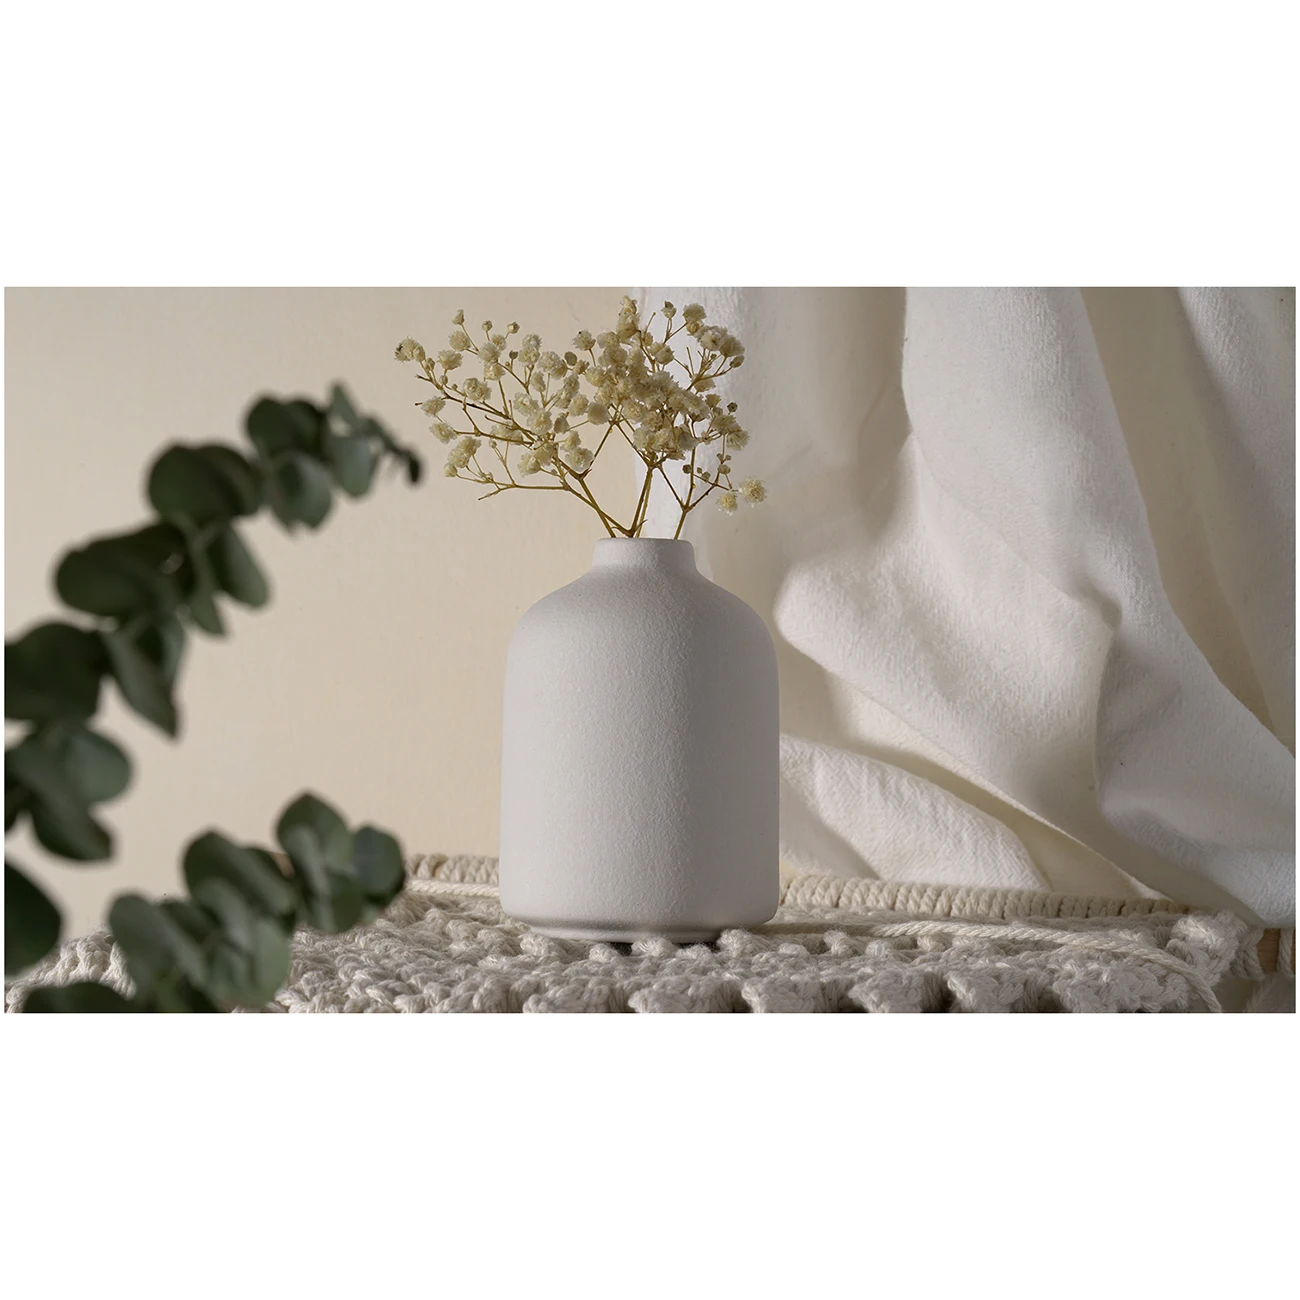 Vas Keramik Polos Embrio Kerajinan Nordic Dekorasi Meja Dekorasi Rumah Bunga Kering Sisipan Bunga Kecil - 4